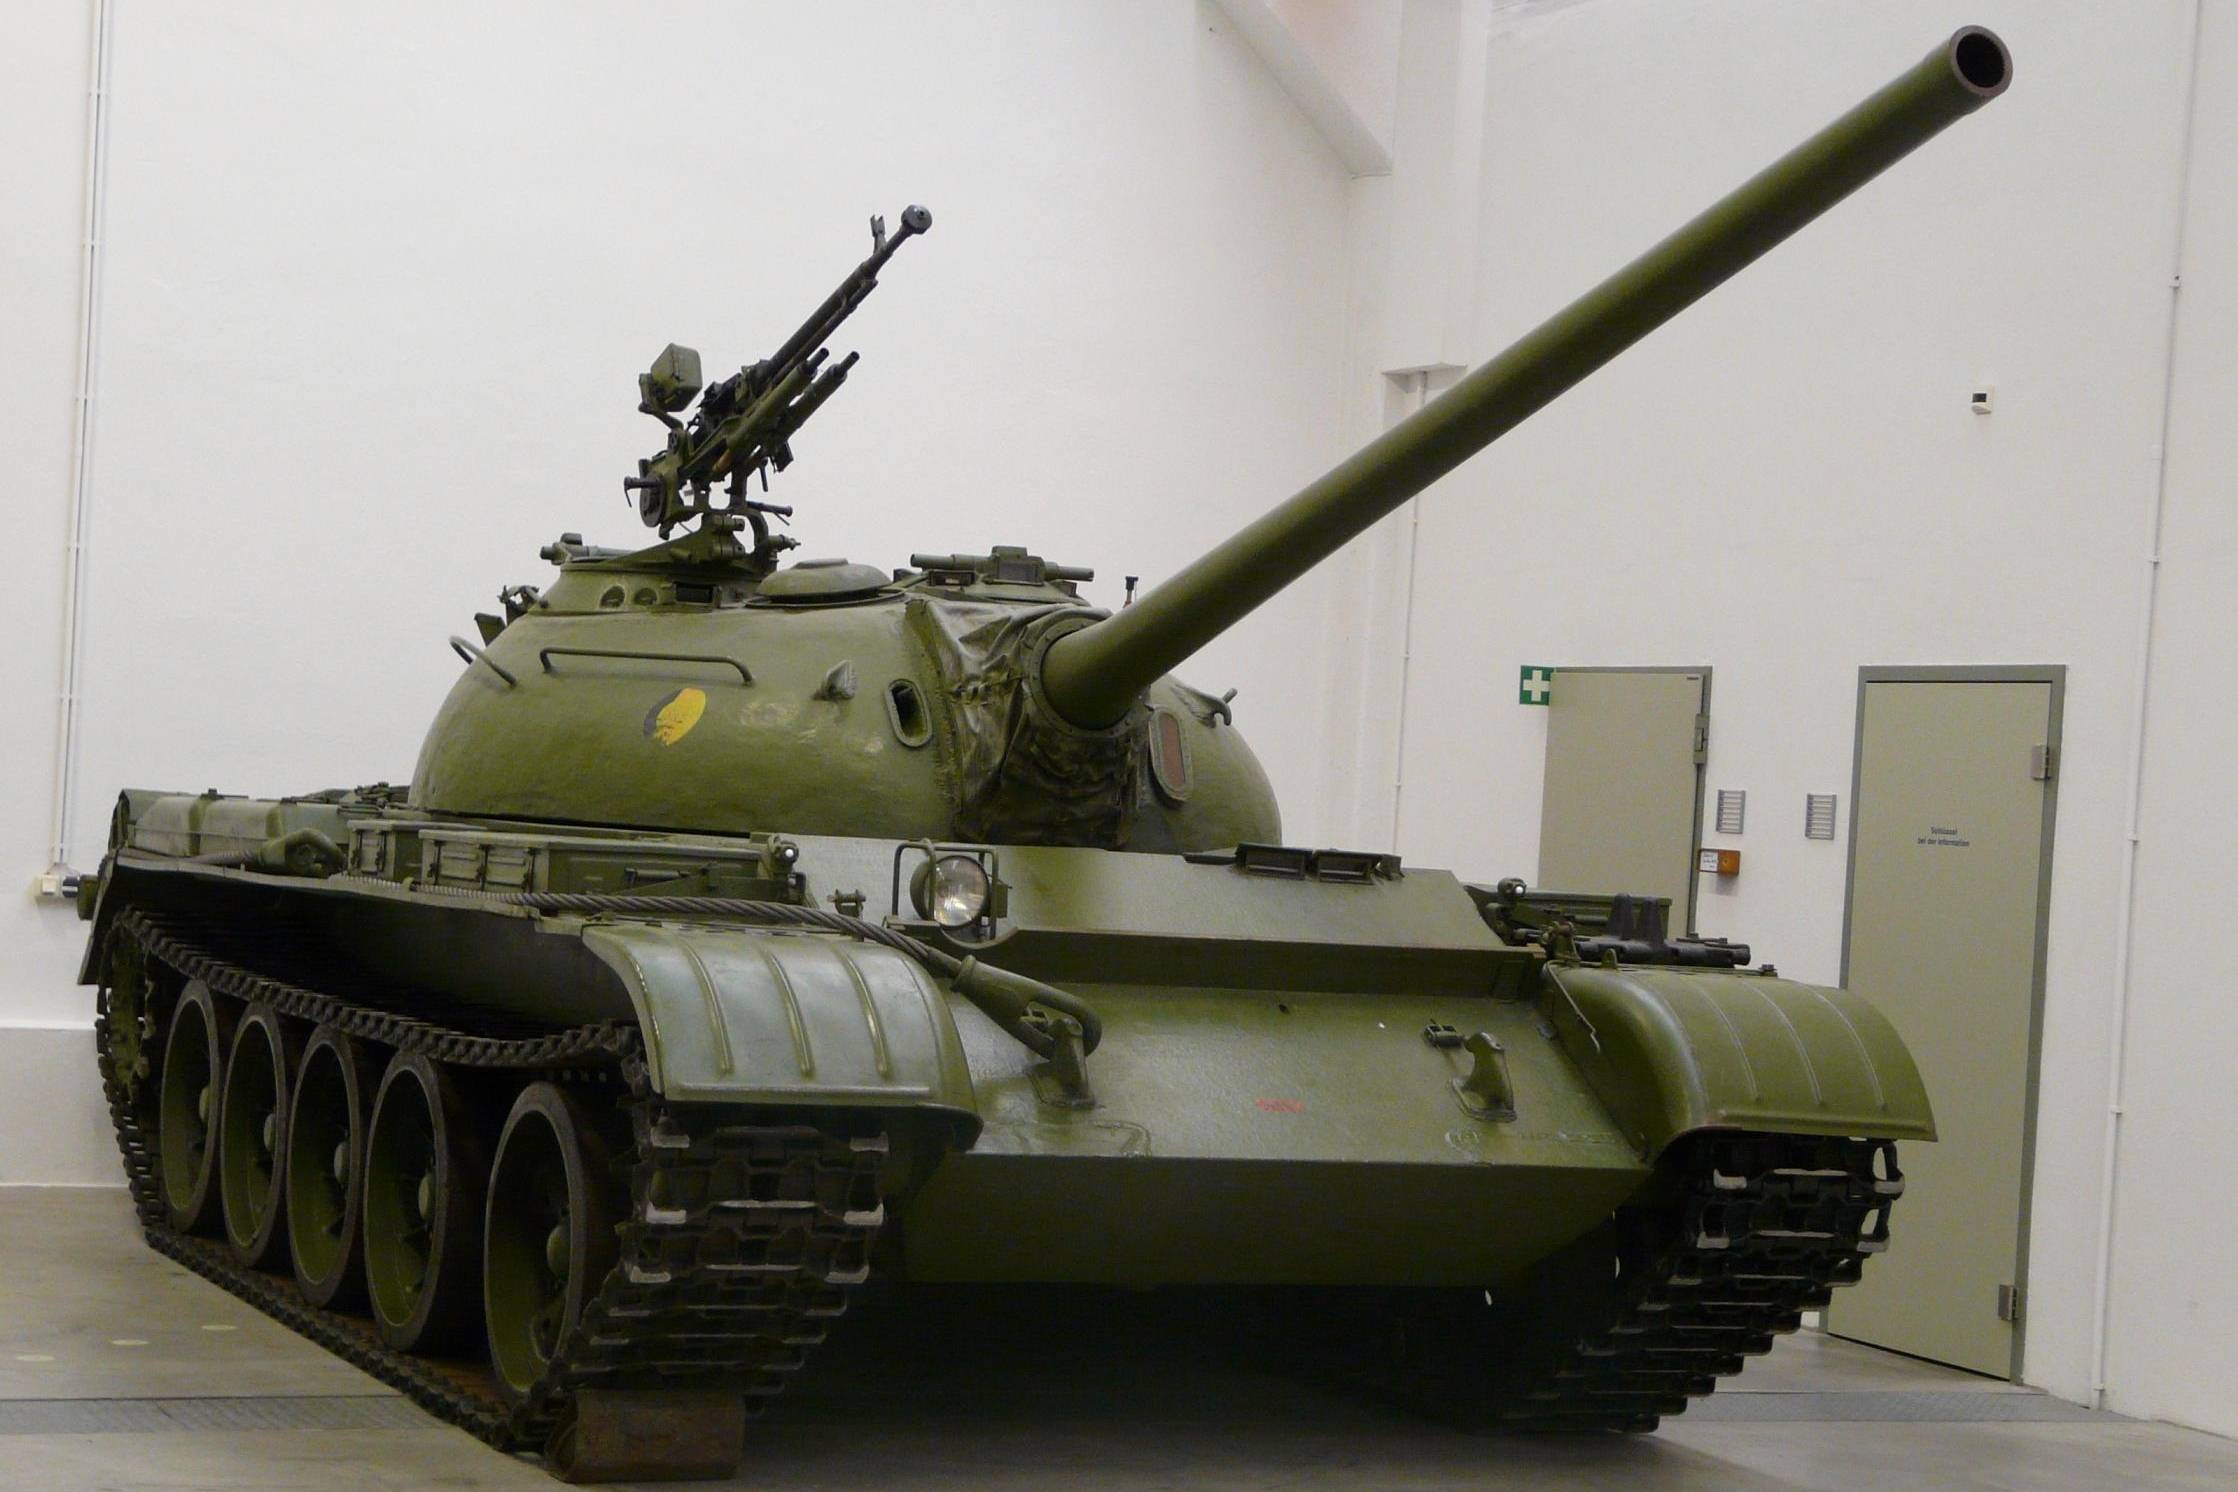 Т-54, оборудование и вооружение танка, калибр пушки и экипаж, обзор и ттх облегченной модели, участие в боевых действиях